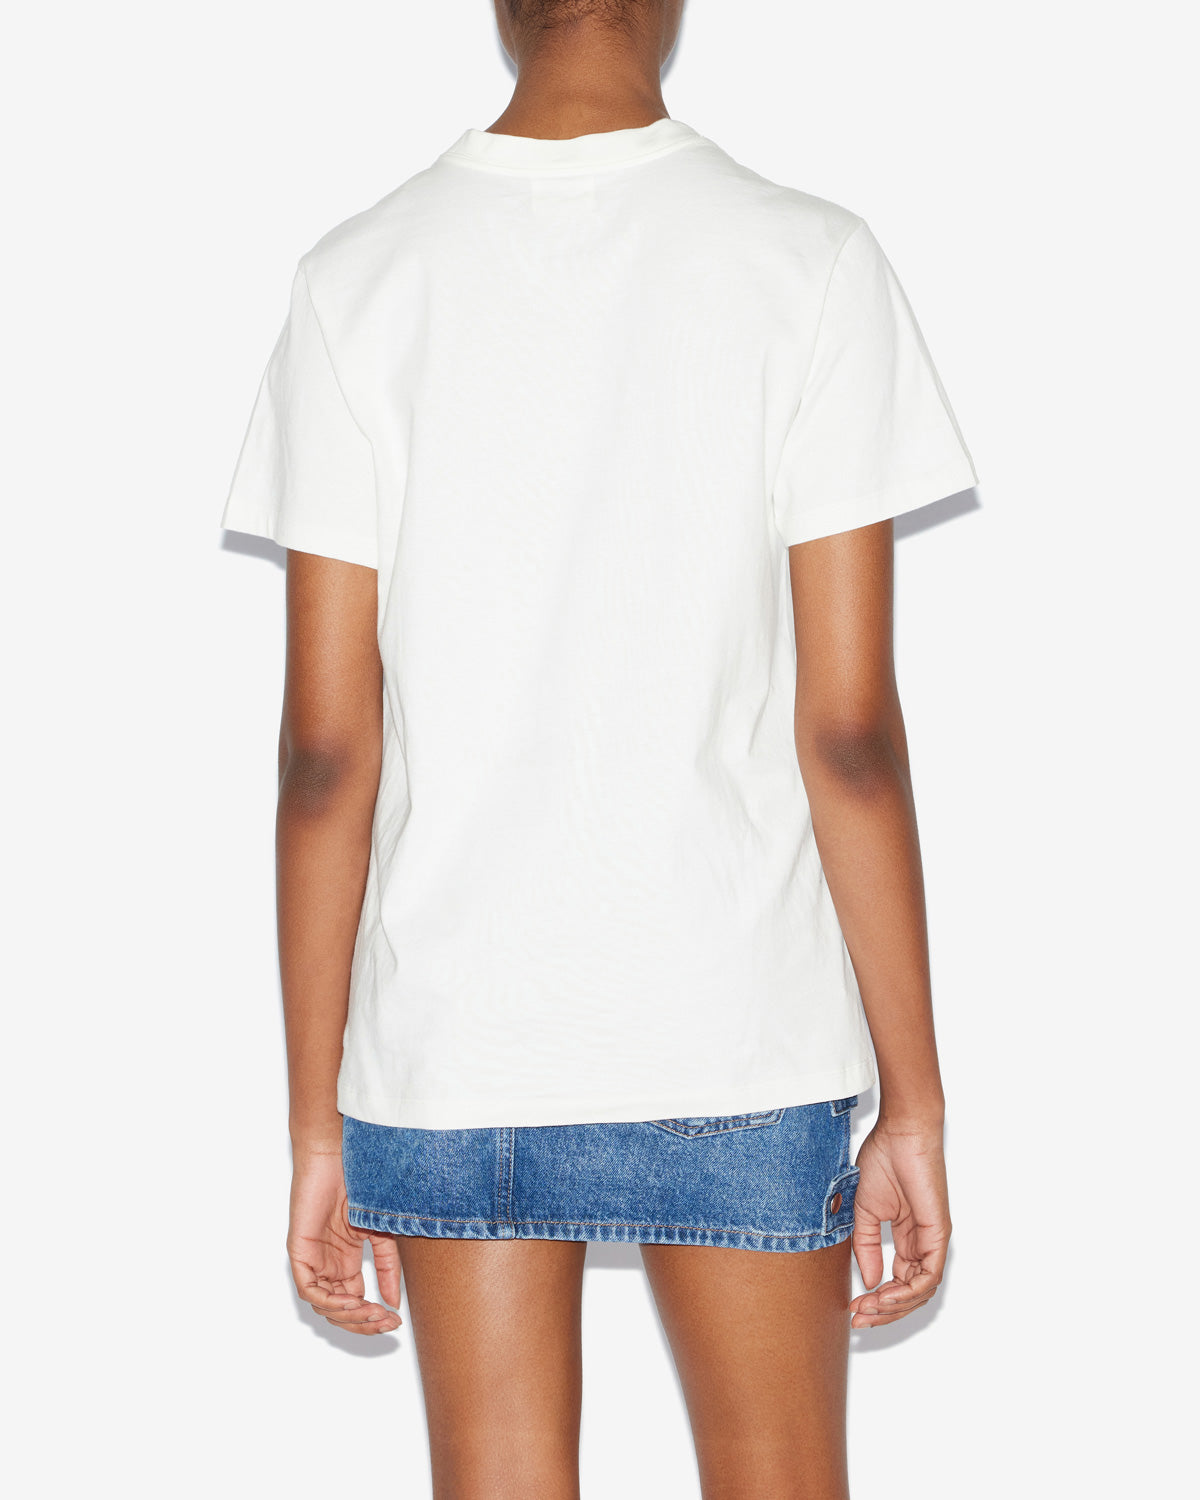 조엘린(zoeline) 티셔츠 Woman 하얀색 3